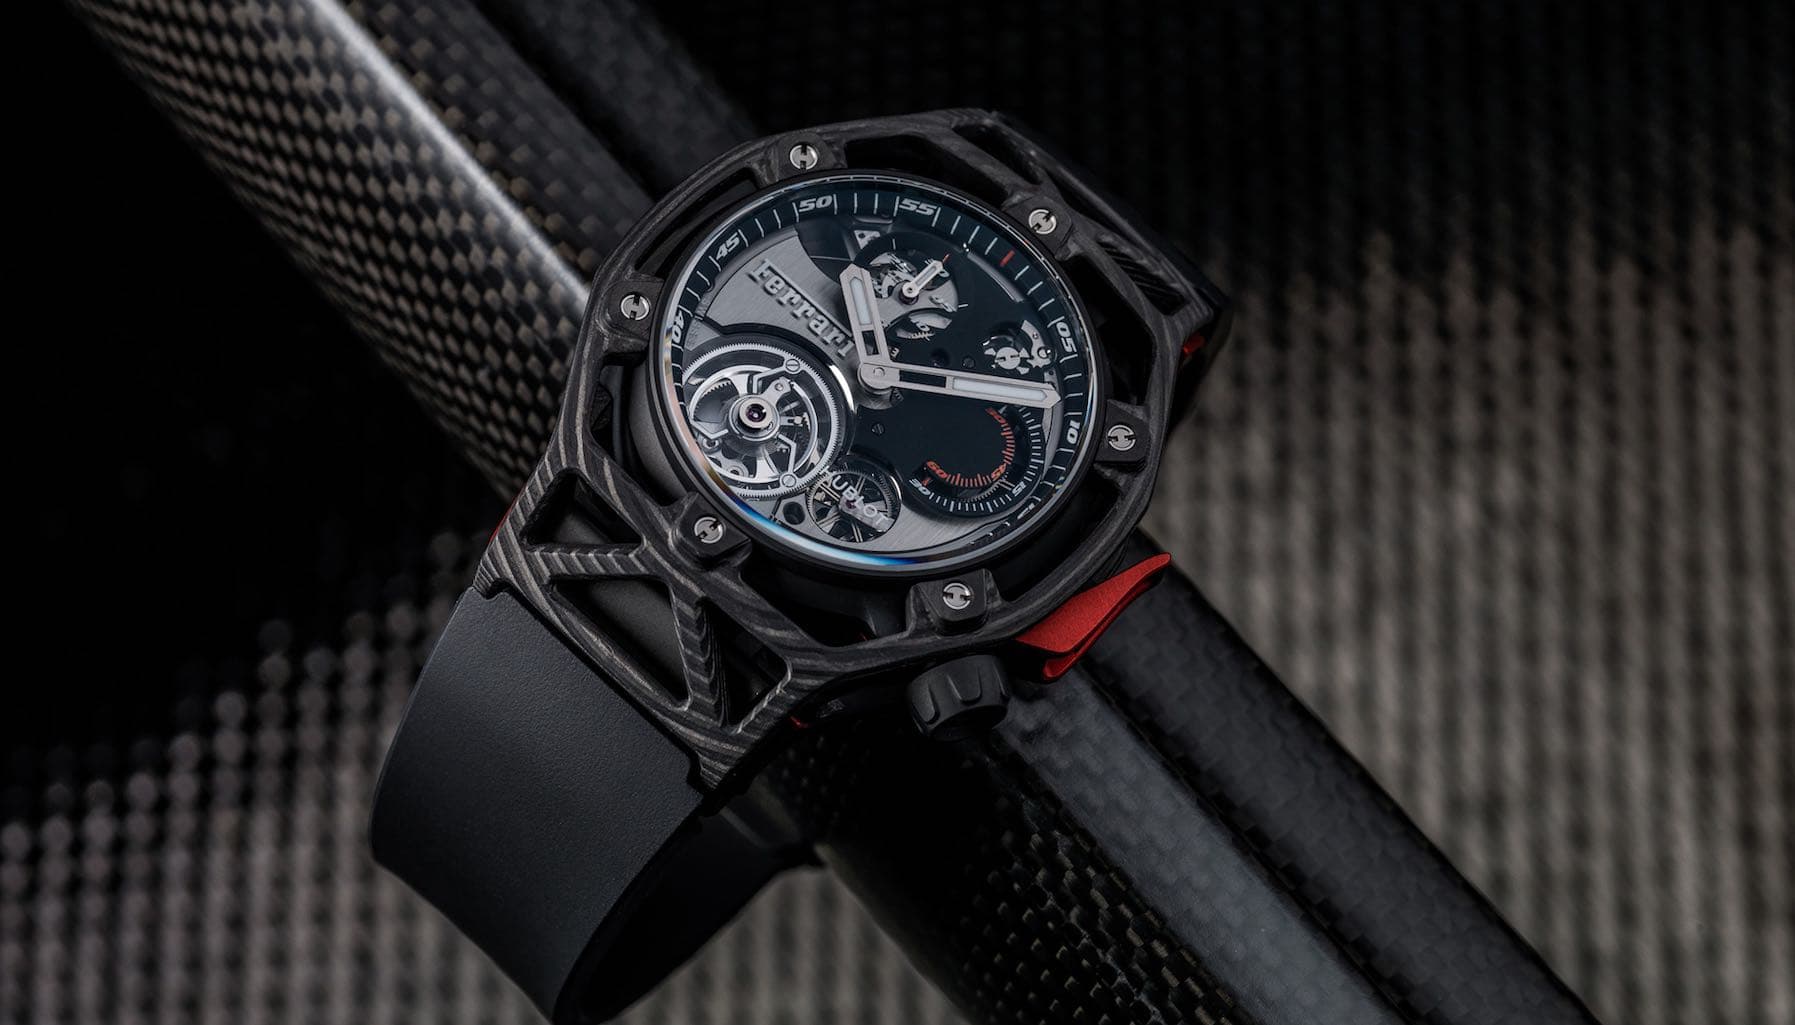 Hublot kỷ niệm 70 năm Ferrari bằng phiên bản đồng hồ đặc biệt